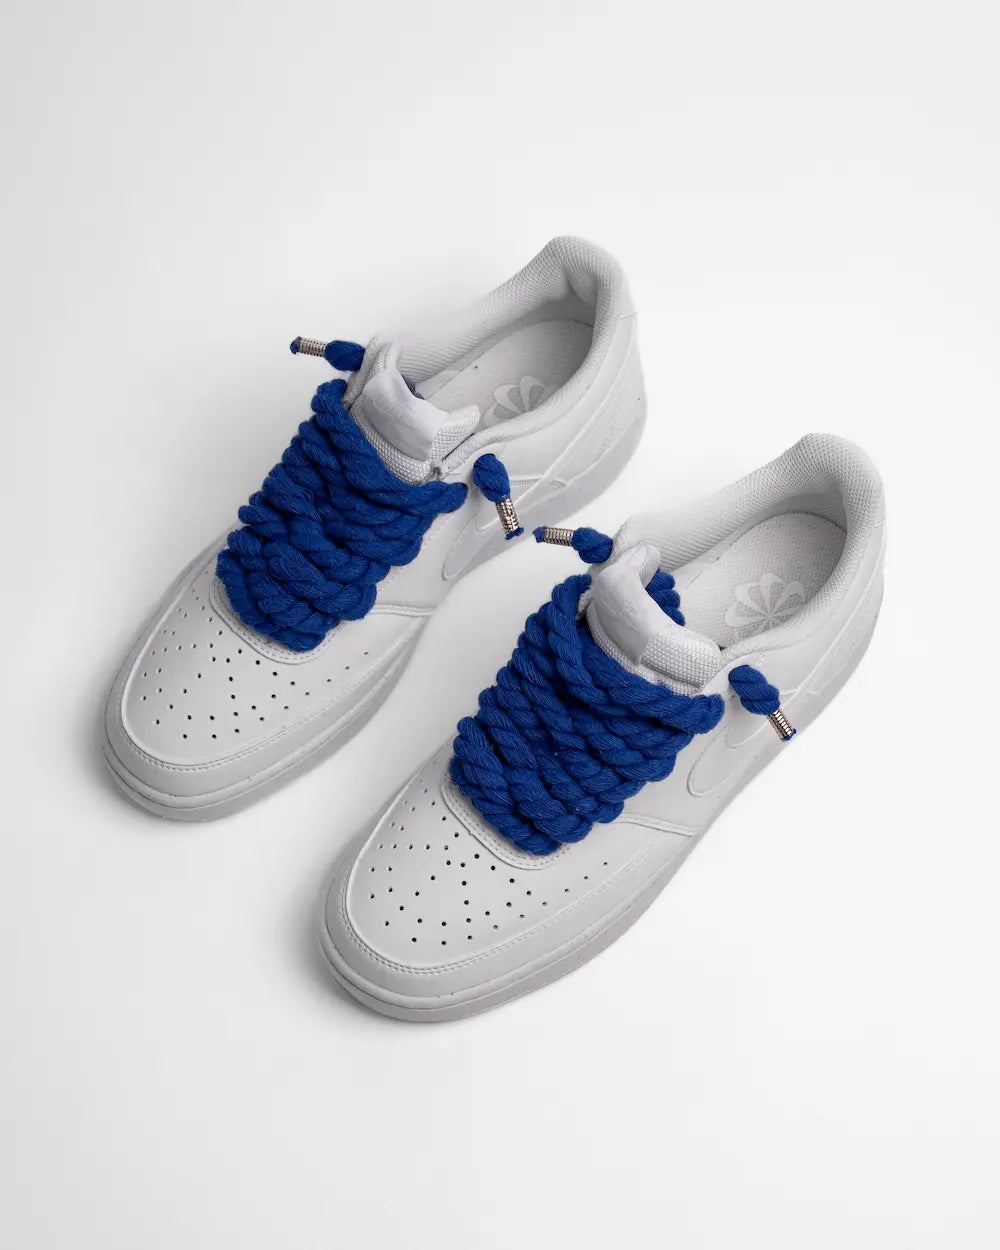 Nike Court Vision personalizzata con lacci in corda blu